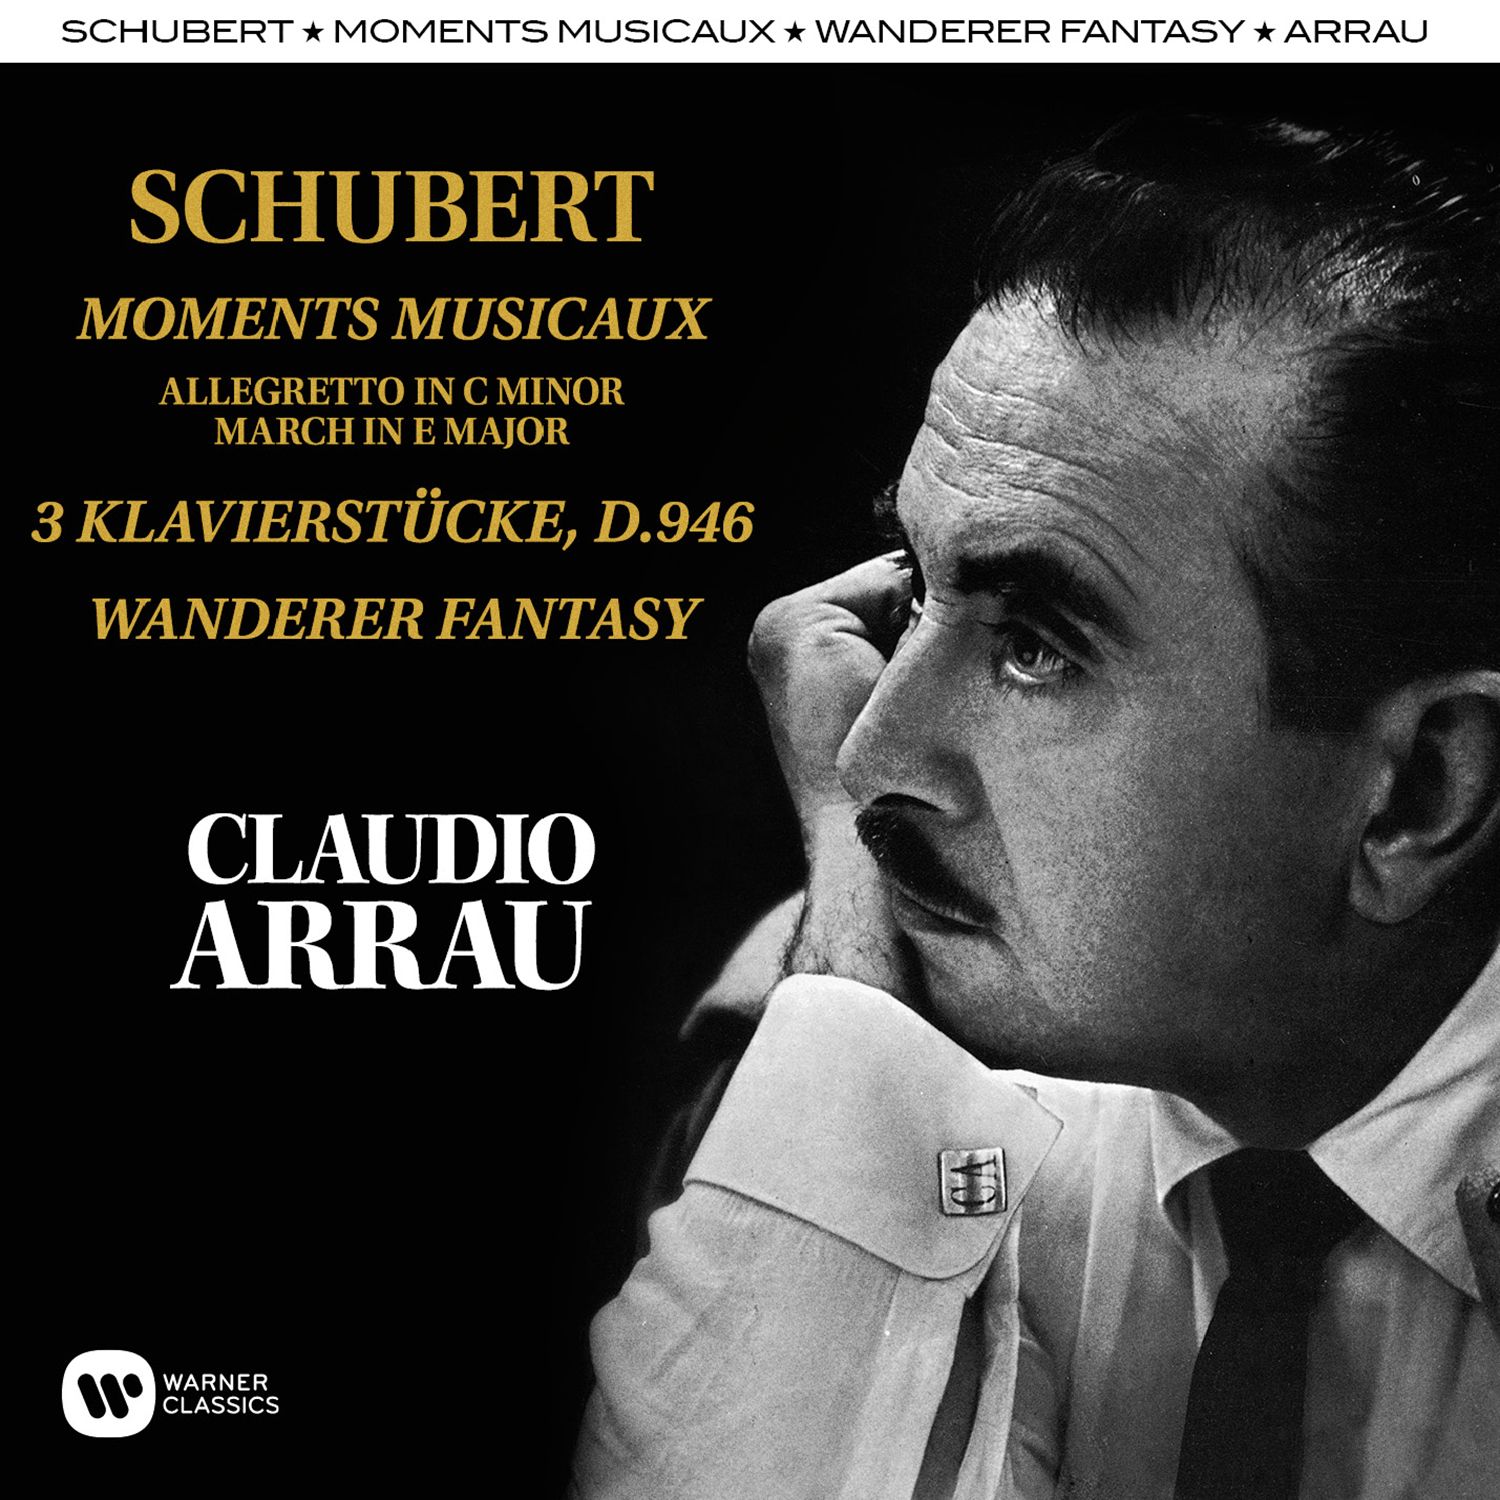 Schubert: Moments Musicaux, Klavierstü cke, Wandererfantasie